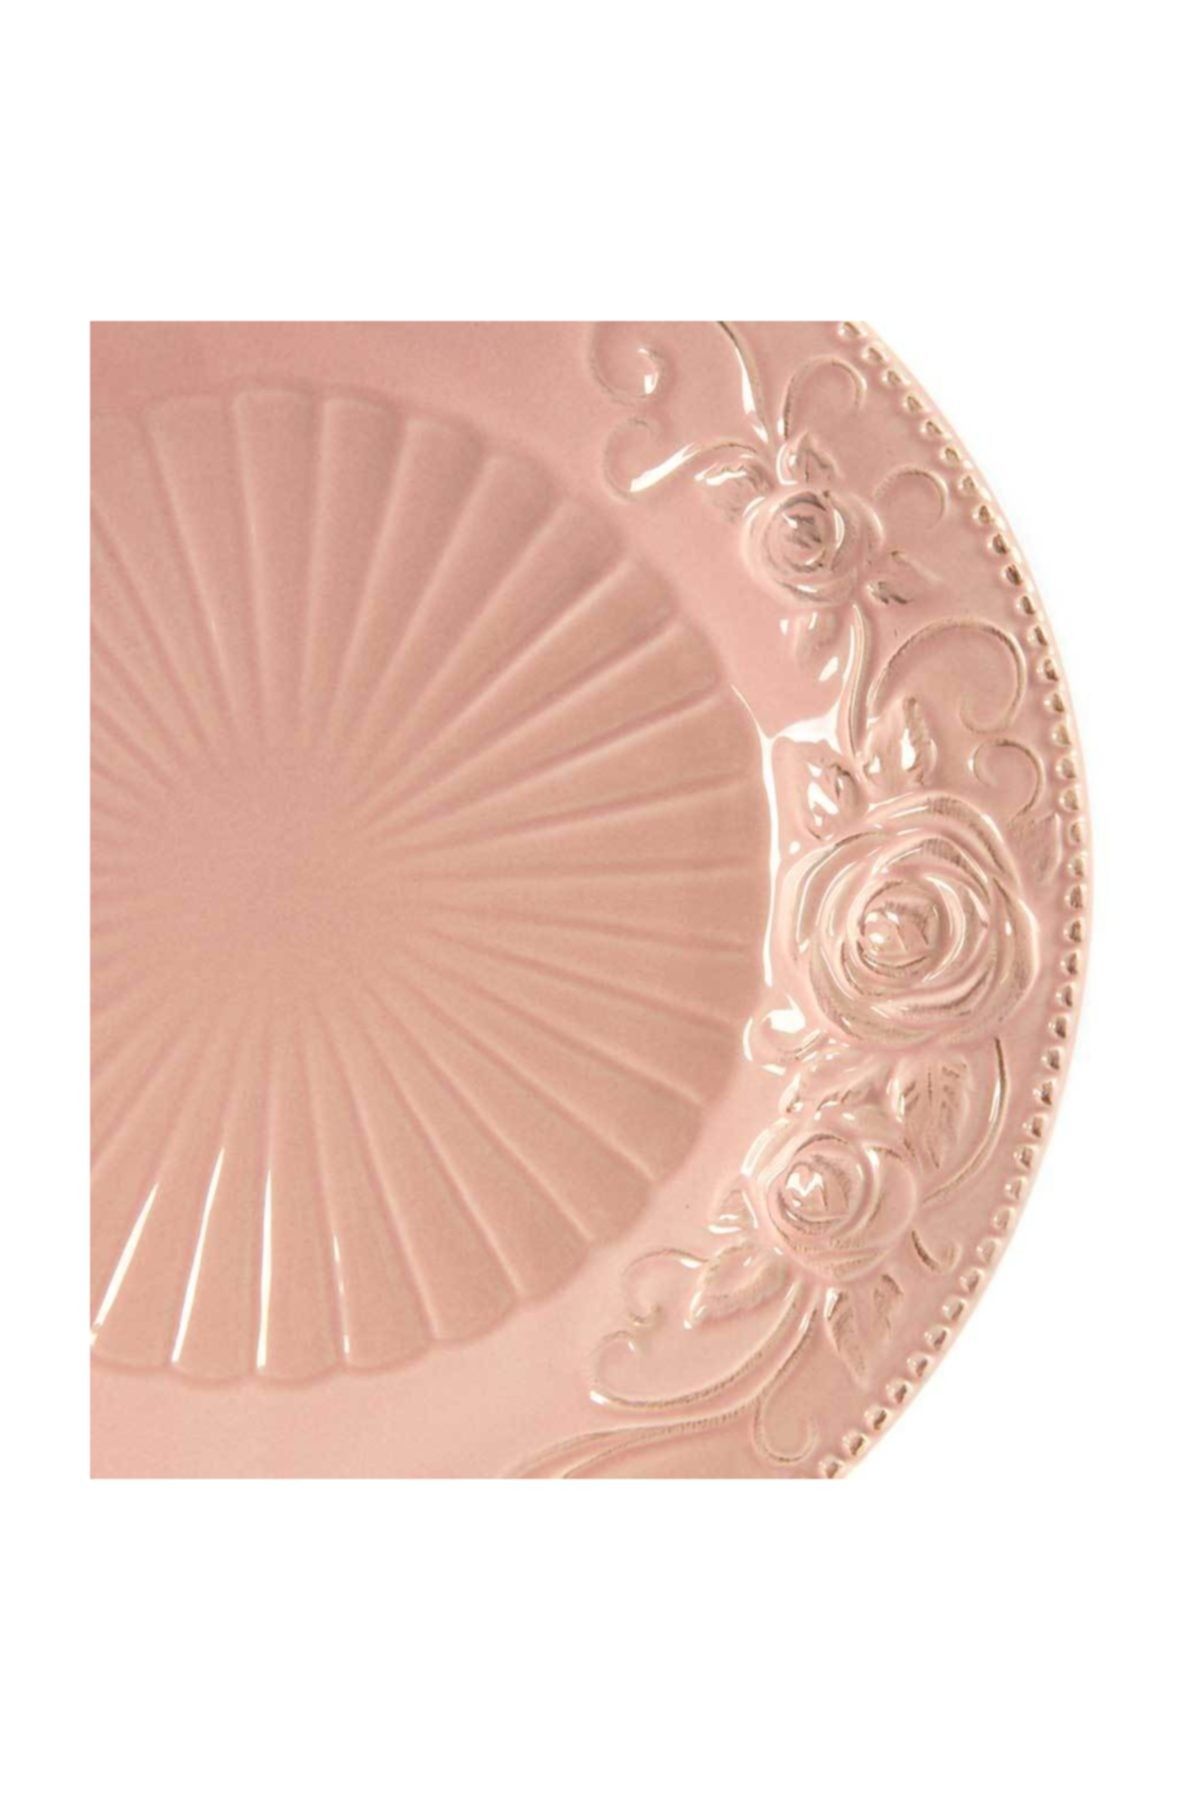 Vitale Pink Çiçekli Porselen 6'Lı Servis Tabağı AkBp0007